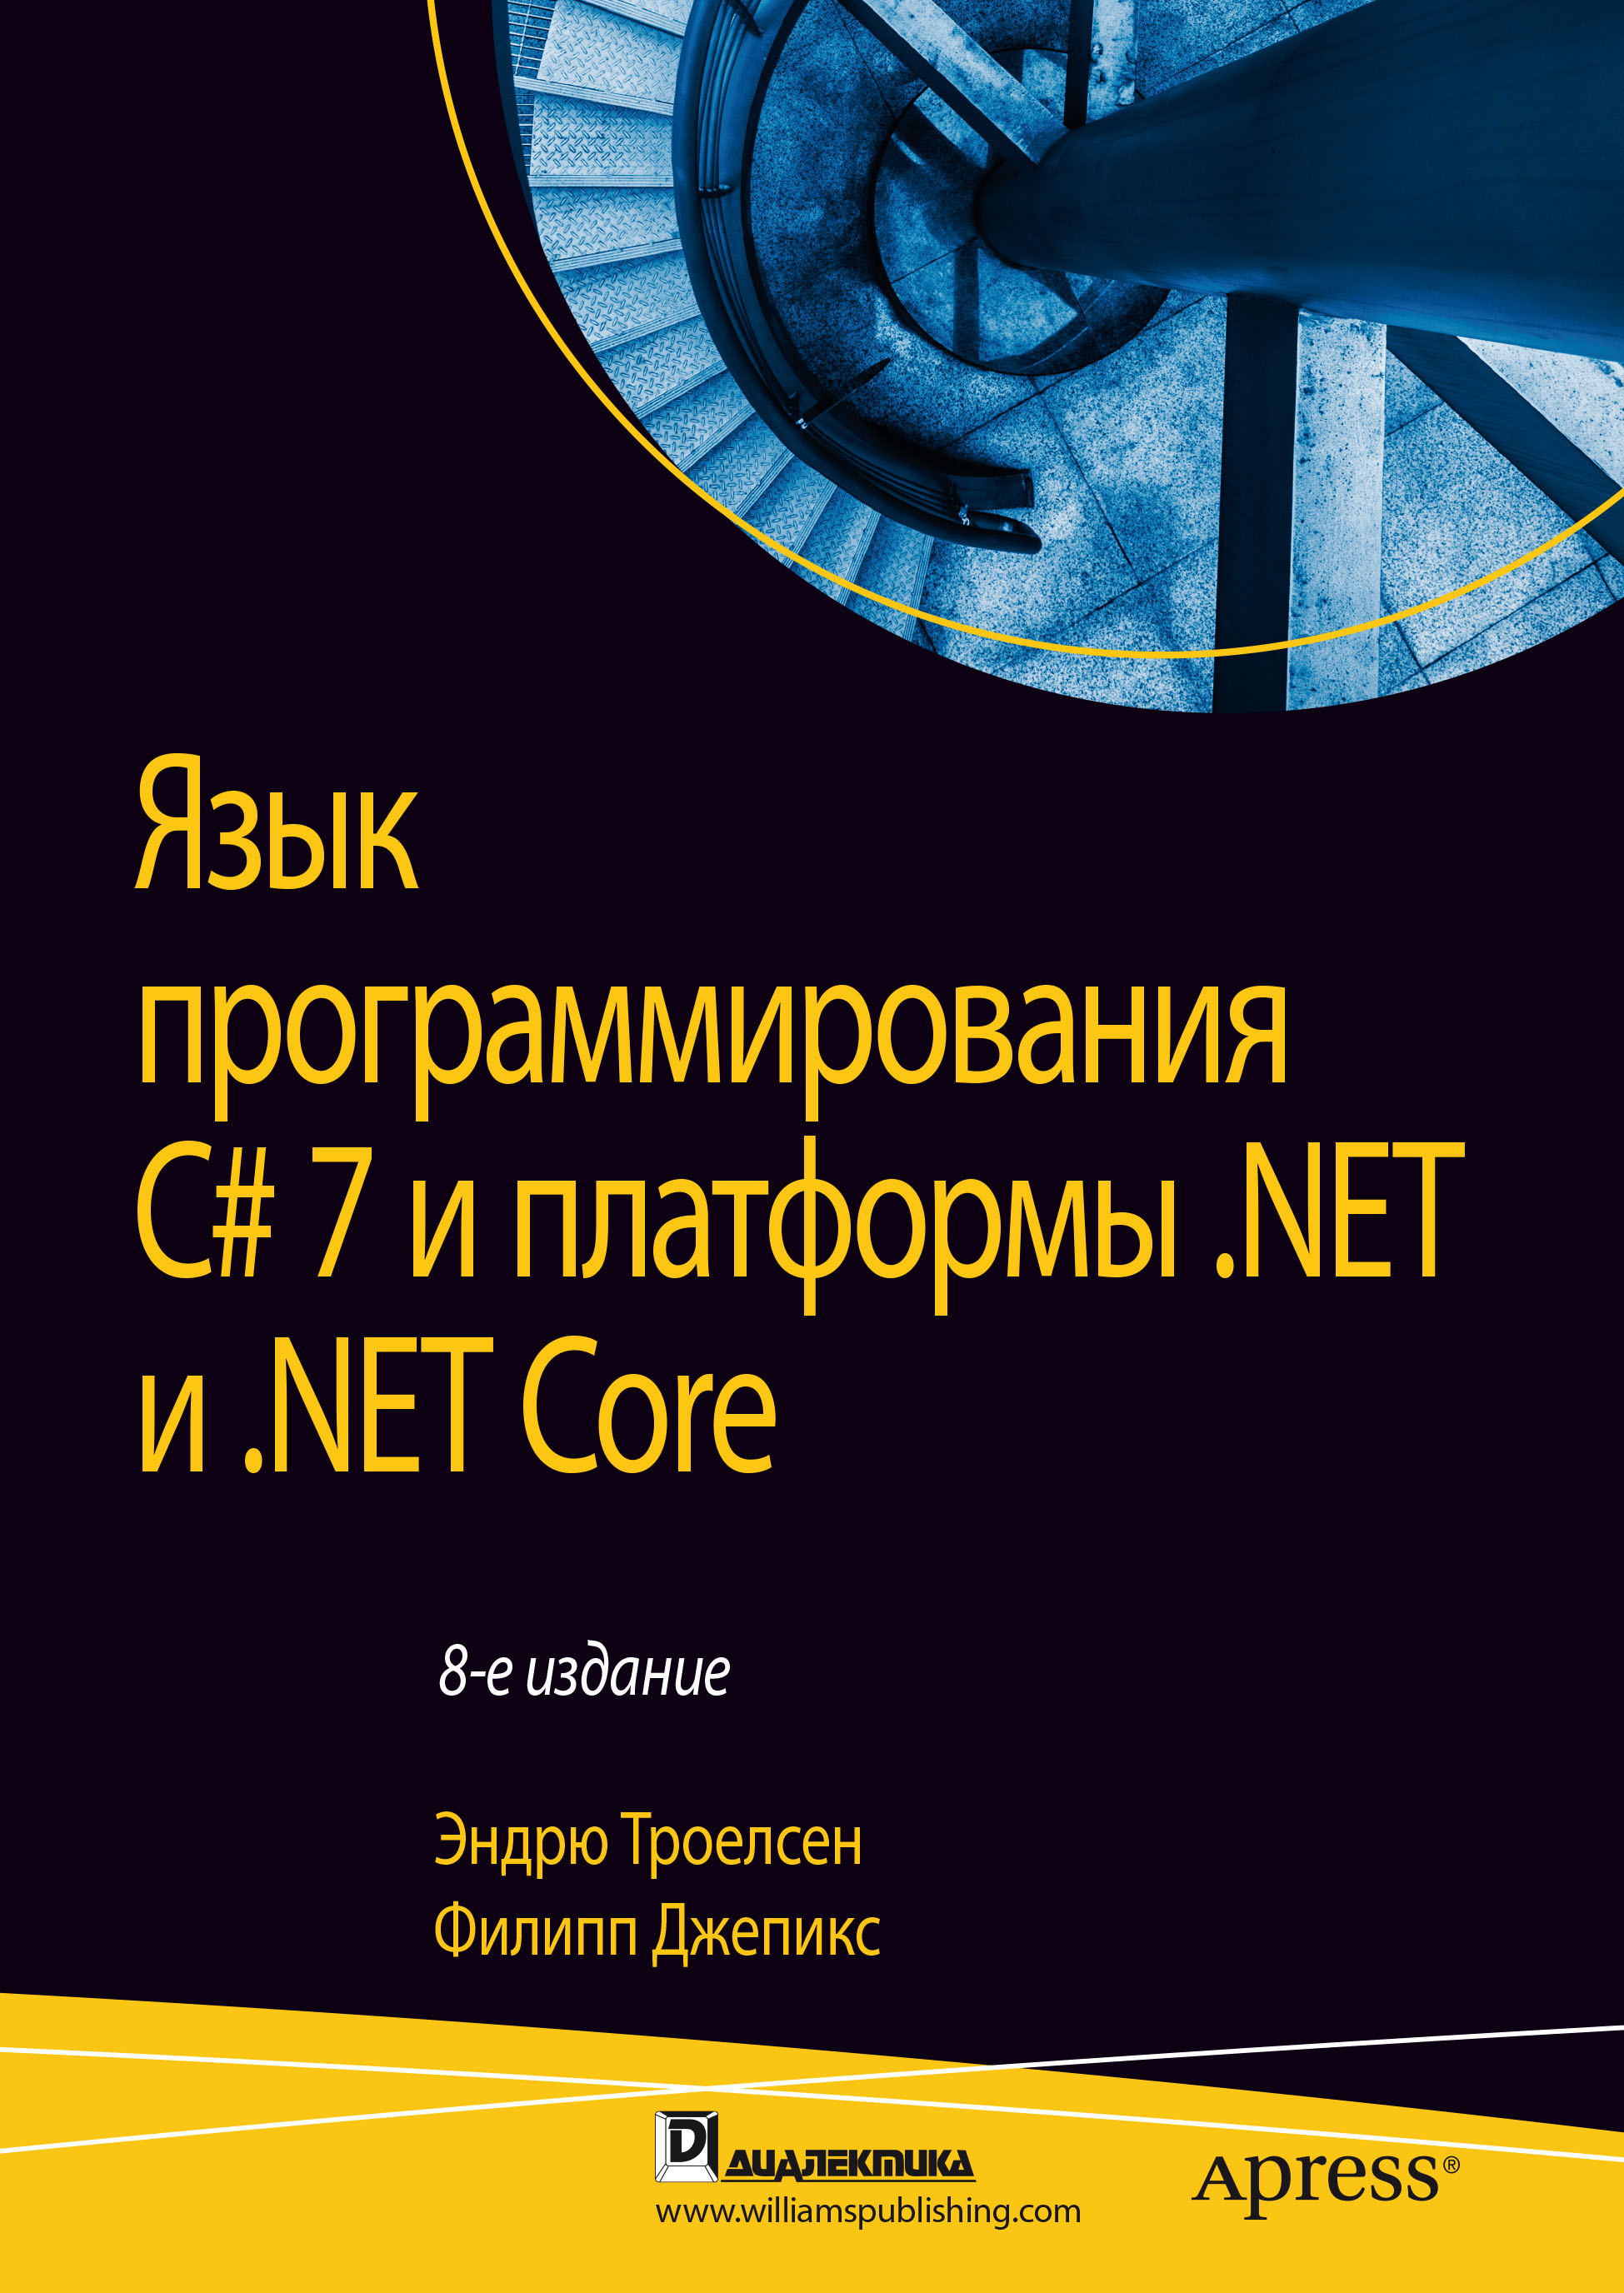 Книга  Язык программирования C# 7 и платформы .NET и .NET Core созданная Эндрю Троелсен, Филипп Джепикс, Ю. Н. Артеменко может относится к жанру зарубежная компьютерная литература, программирование. Стоимость электронной книги Язык программирования C# 7 и платформы .NET и .NET Core с идентификатором 48637475 составляет 4000.00 руб.